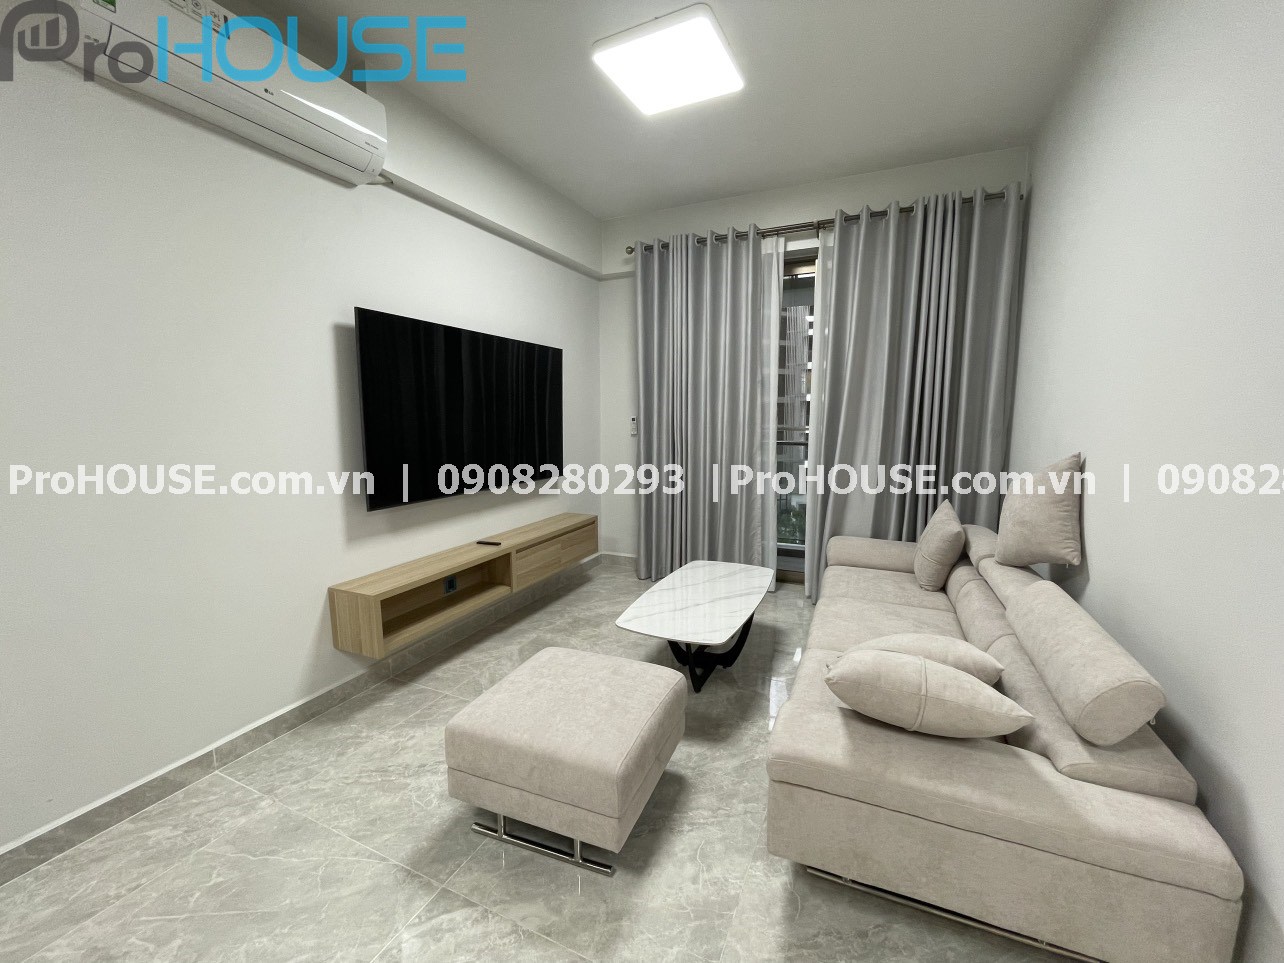 Cho thuê căn hộ cao cấp Midtown M8 - The Peak tông trắng sáng đầy đủ nội thất